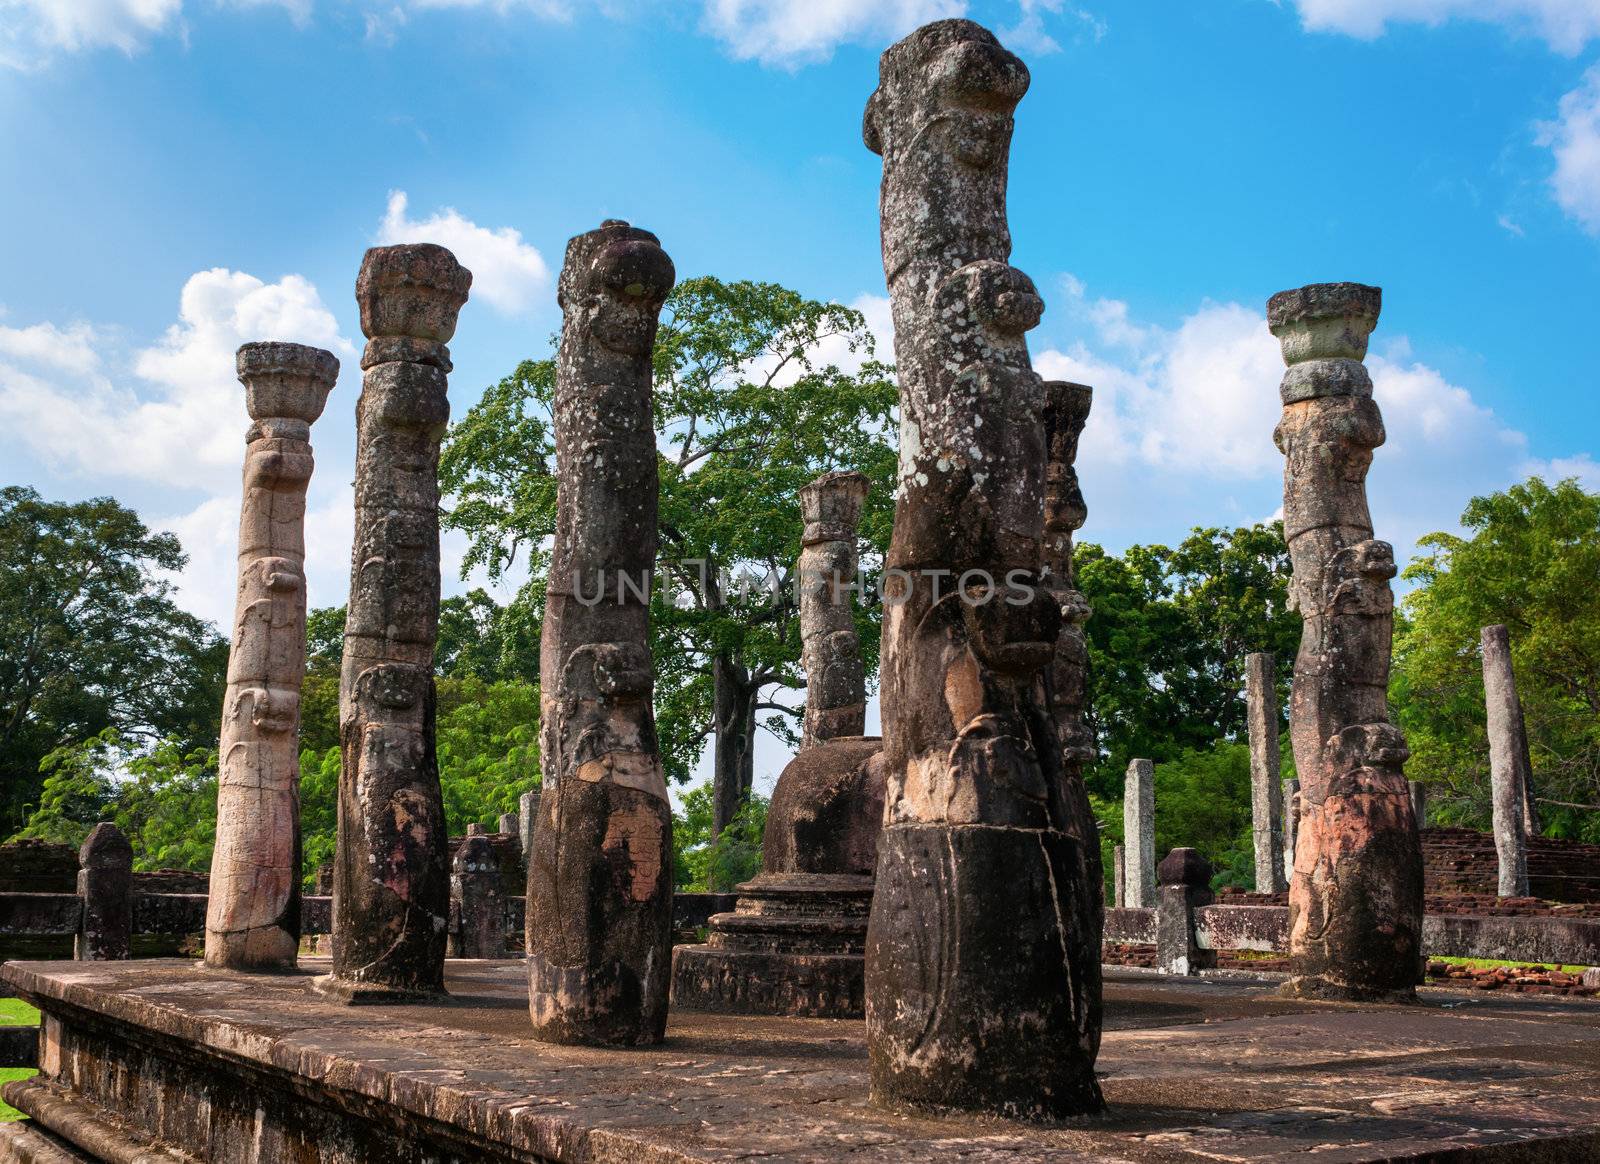 Granite columns of the Nissanka Latha Mandapaya, a unique structure in the ancient city of Polonnaruwa in Sri Lanka. 